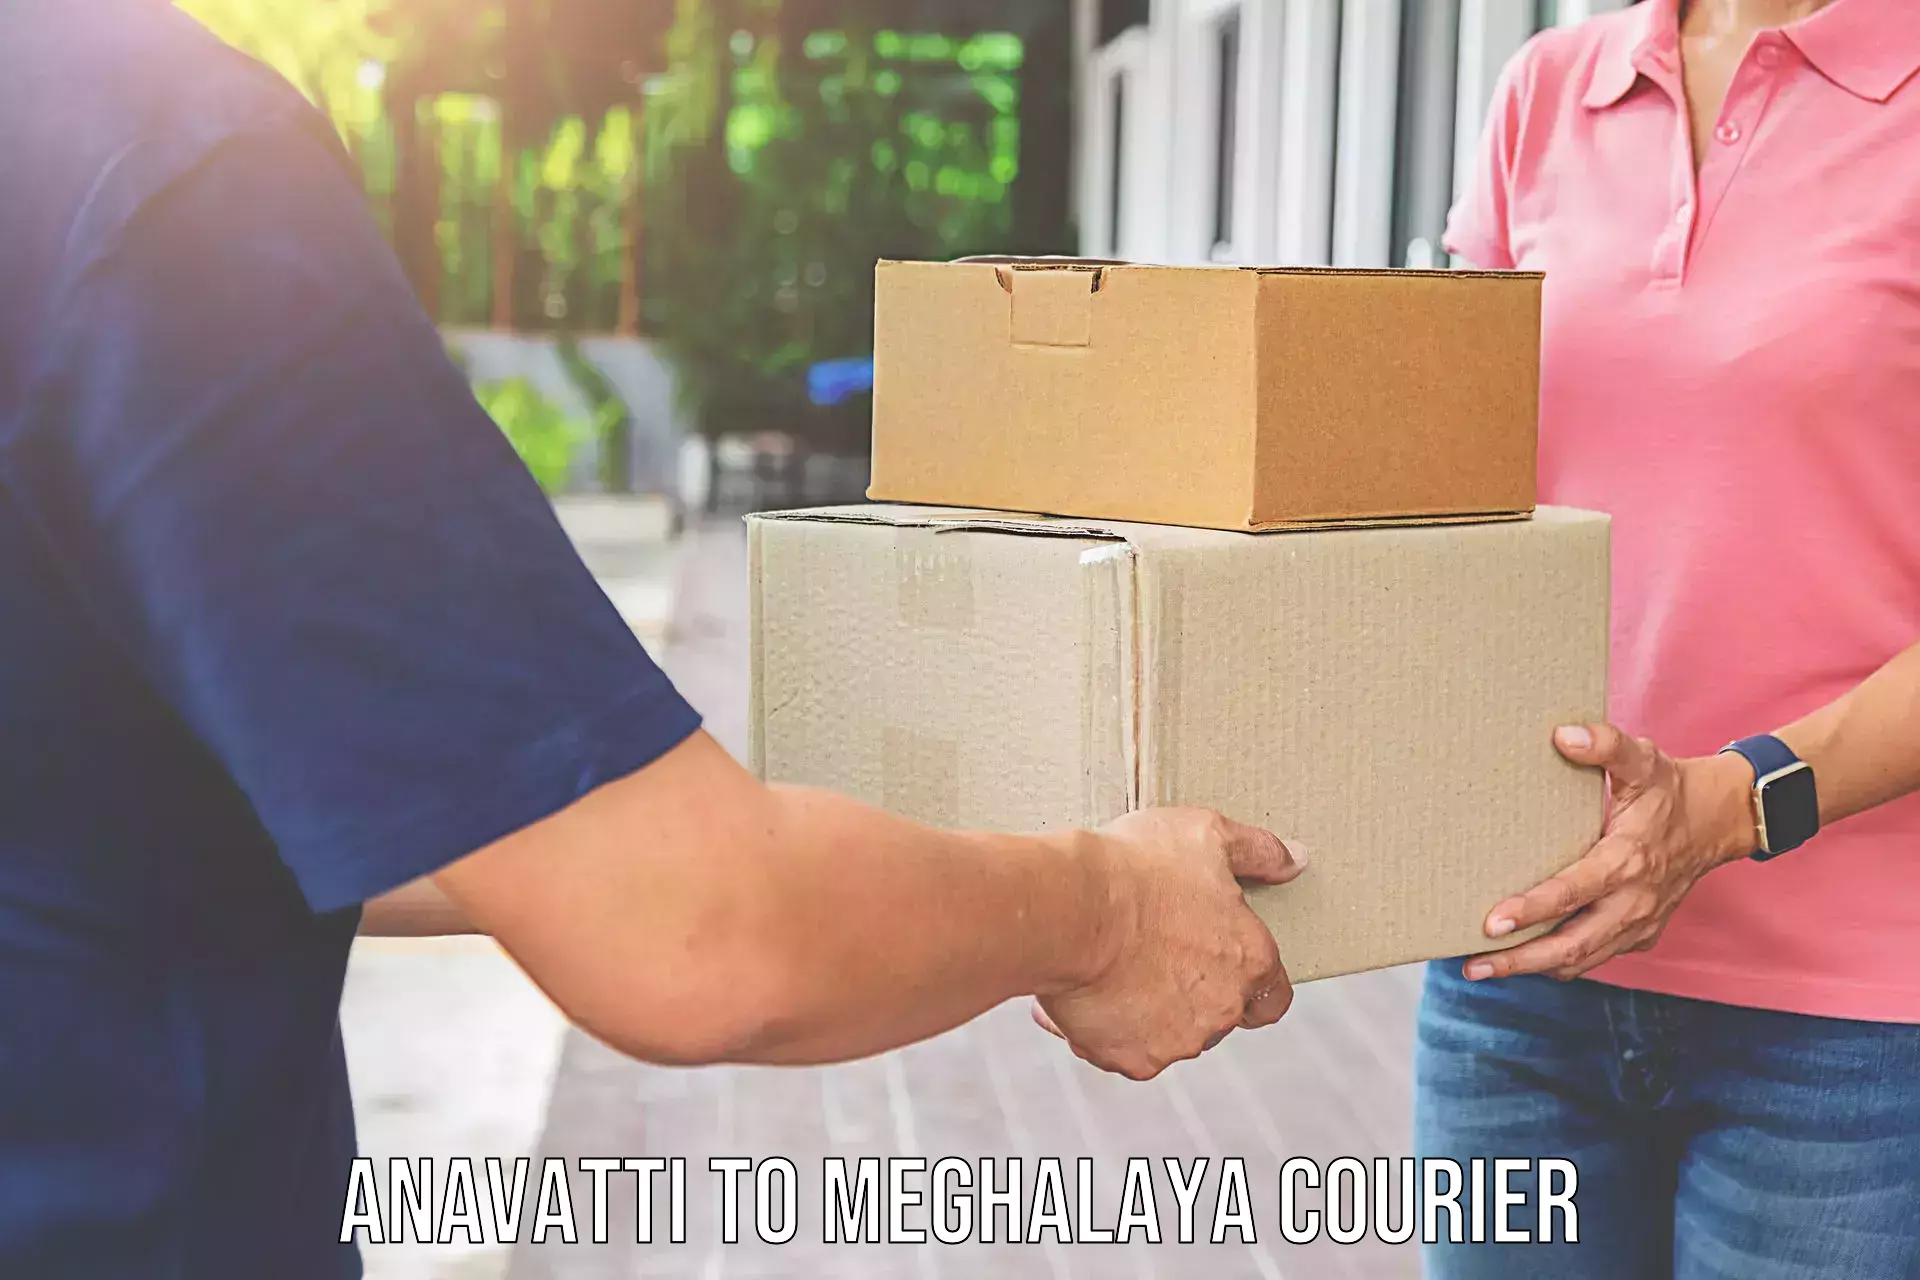 Personalized moving service Anavatti to Meghalaya